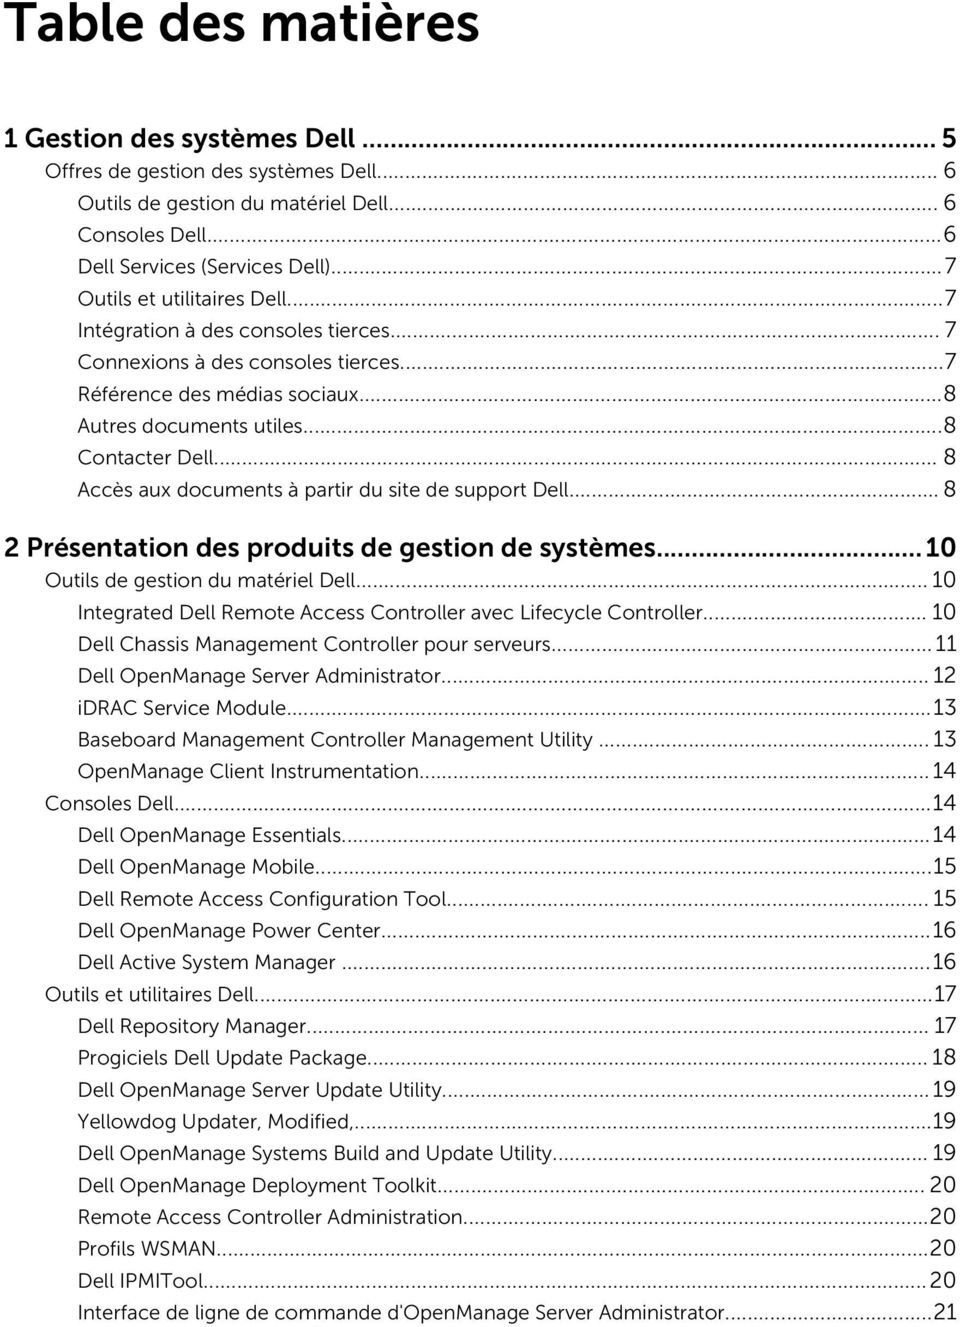 .. 8 Accès aux documents à partir du site de support Dell... 8 2 Présentation des produits de gestion de systèmes...10 Outils de gestion du matériel Dell.